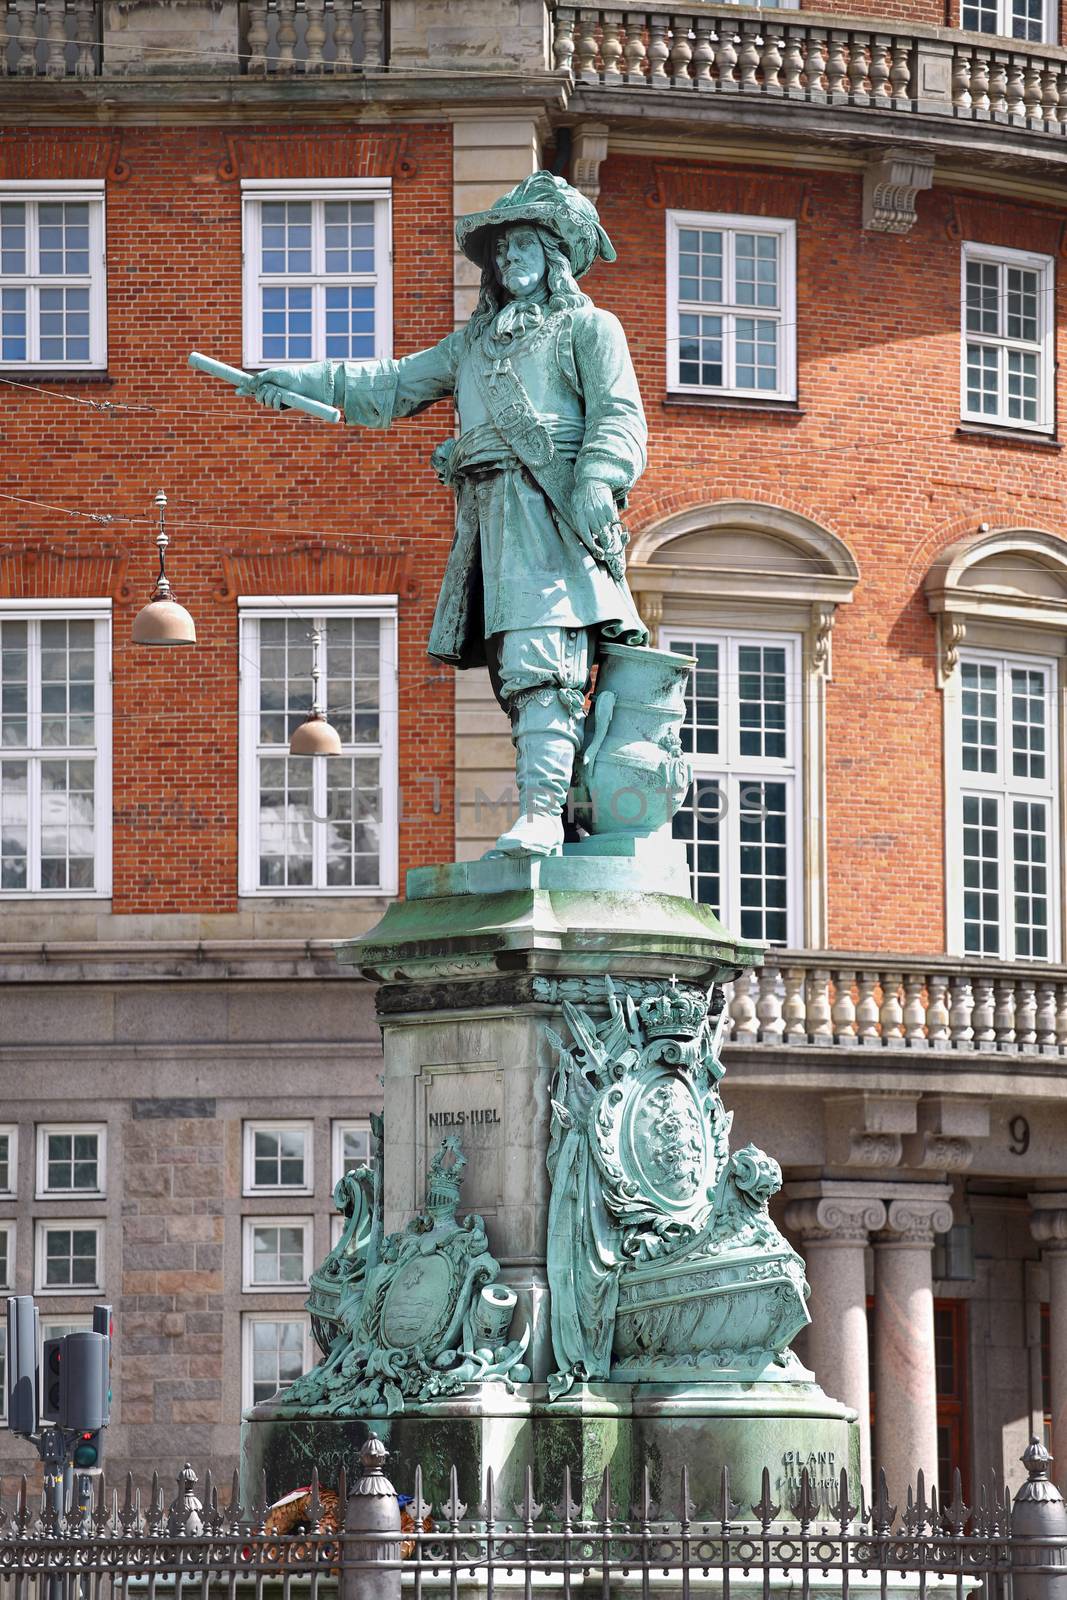  Statue Danish-Norwegian admiral Niels Juel in Copenhagen, Denma by vladacanon